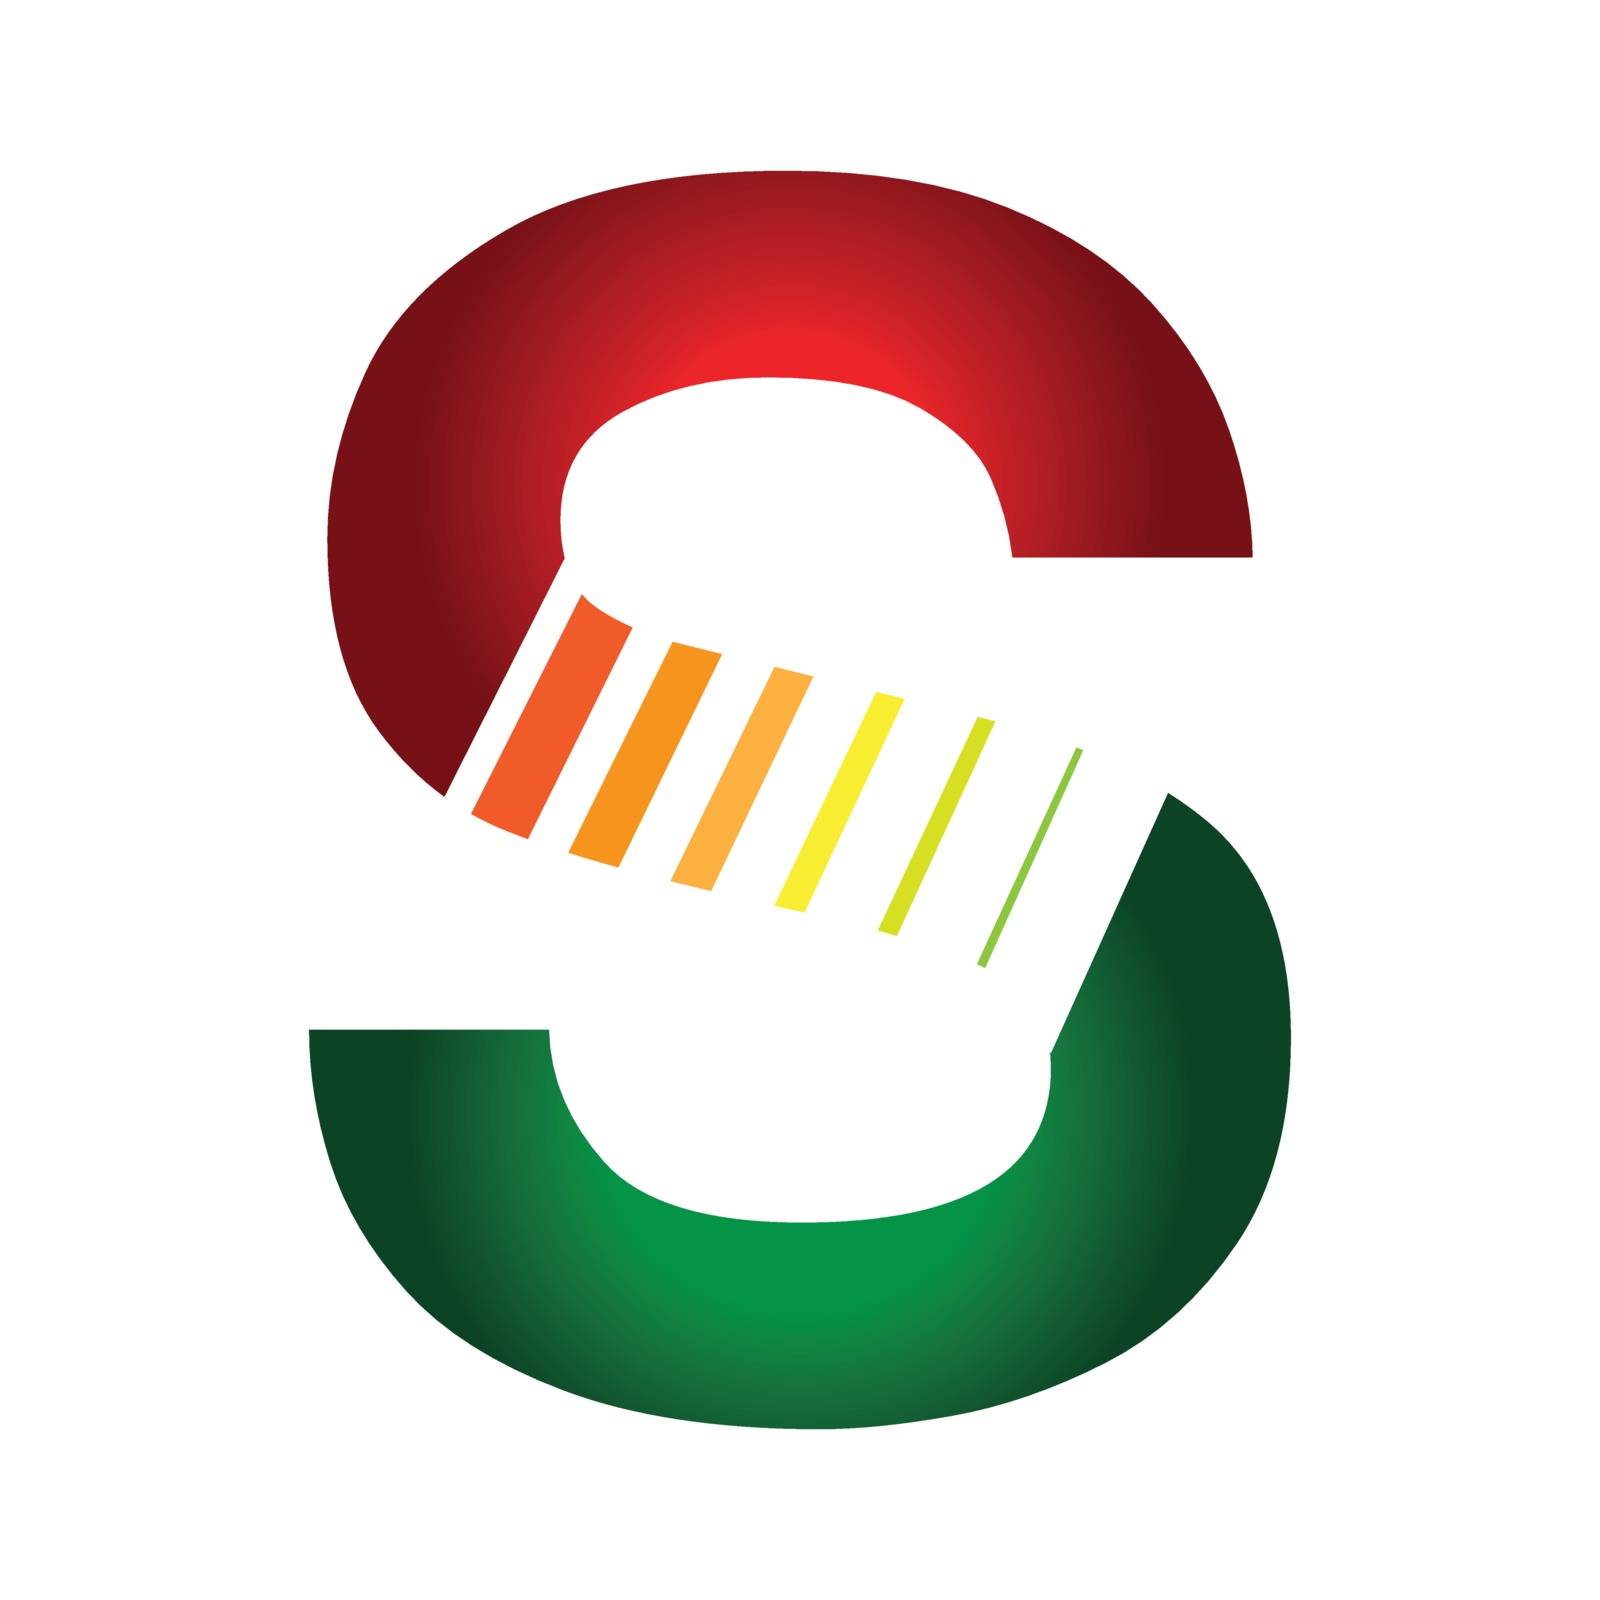 Aesthetics S Logo by sdCrea